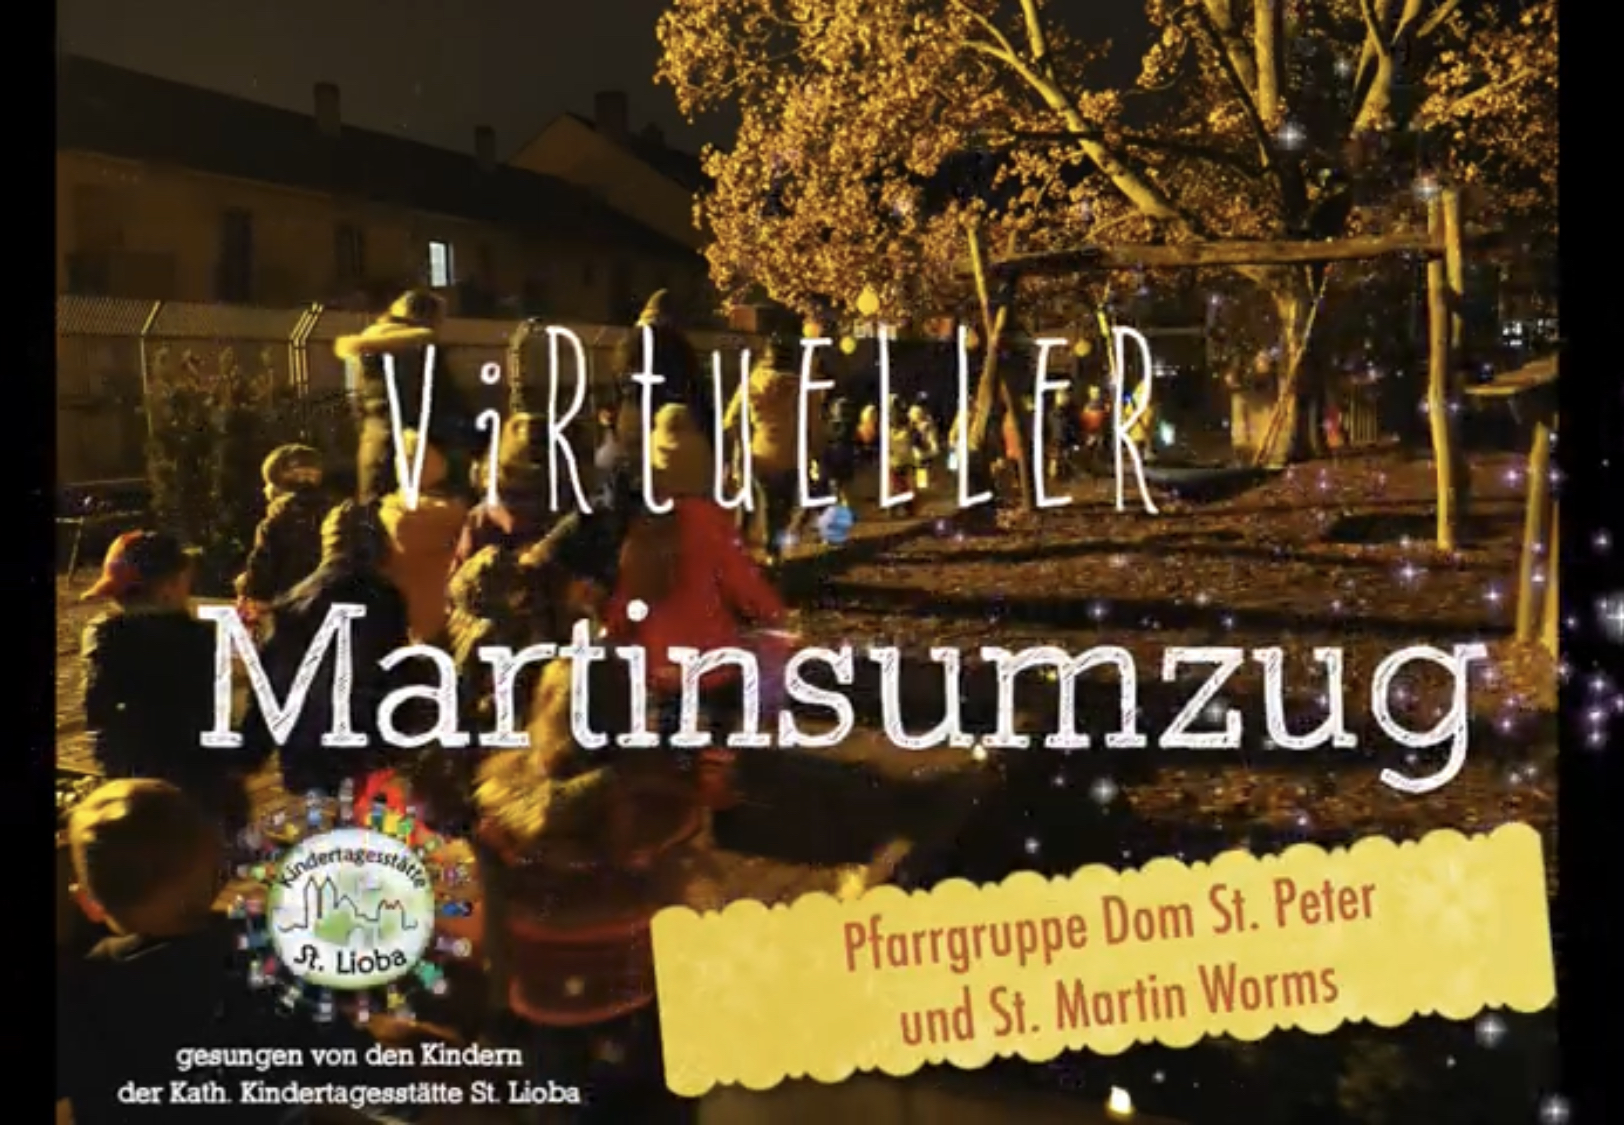 Virtueller Martinsumzug (c) Pfarrgruppe Dom St. Peter und St. Martin / Martina Bauer